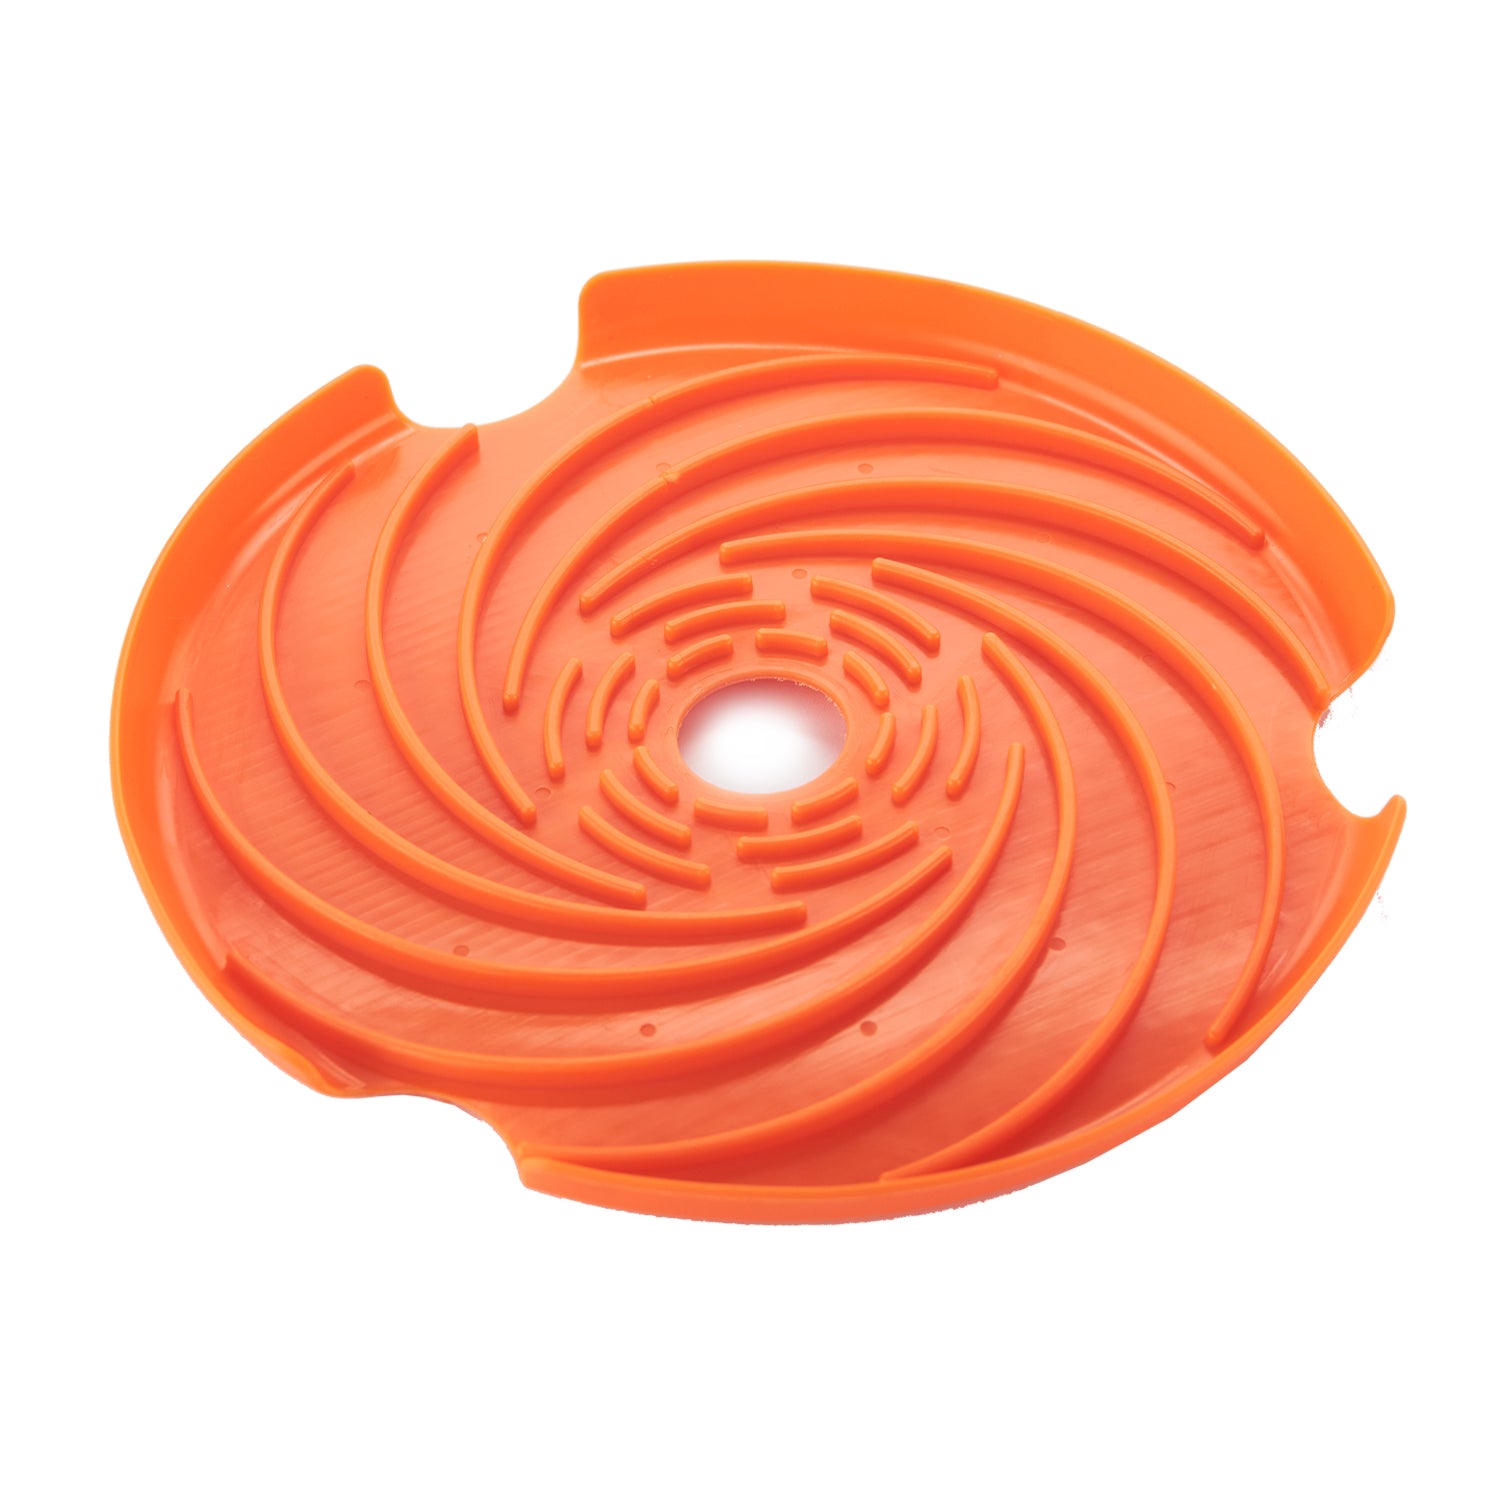 Disco Frisbee y Lick Pad en Naranja - Accesorio para Comederos SPIN